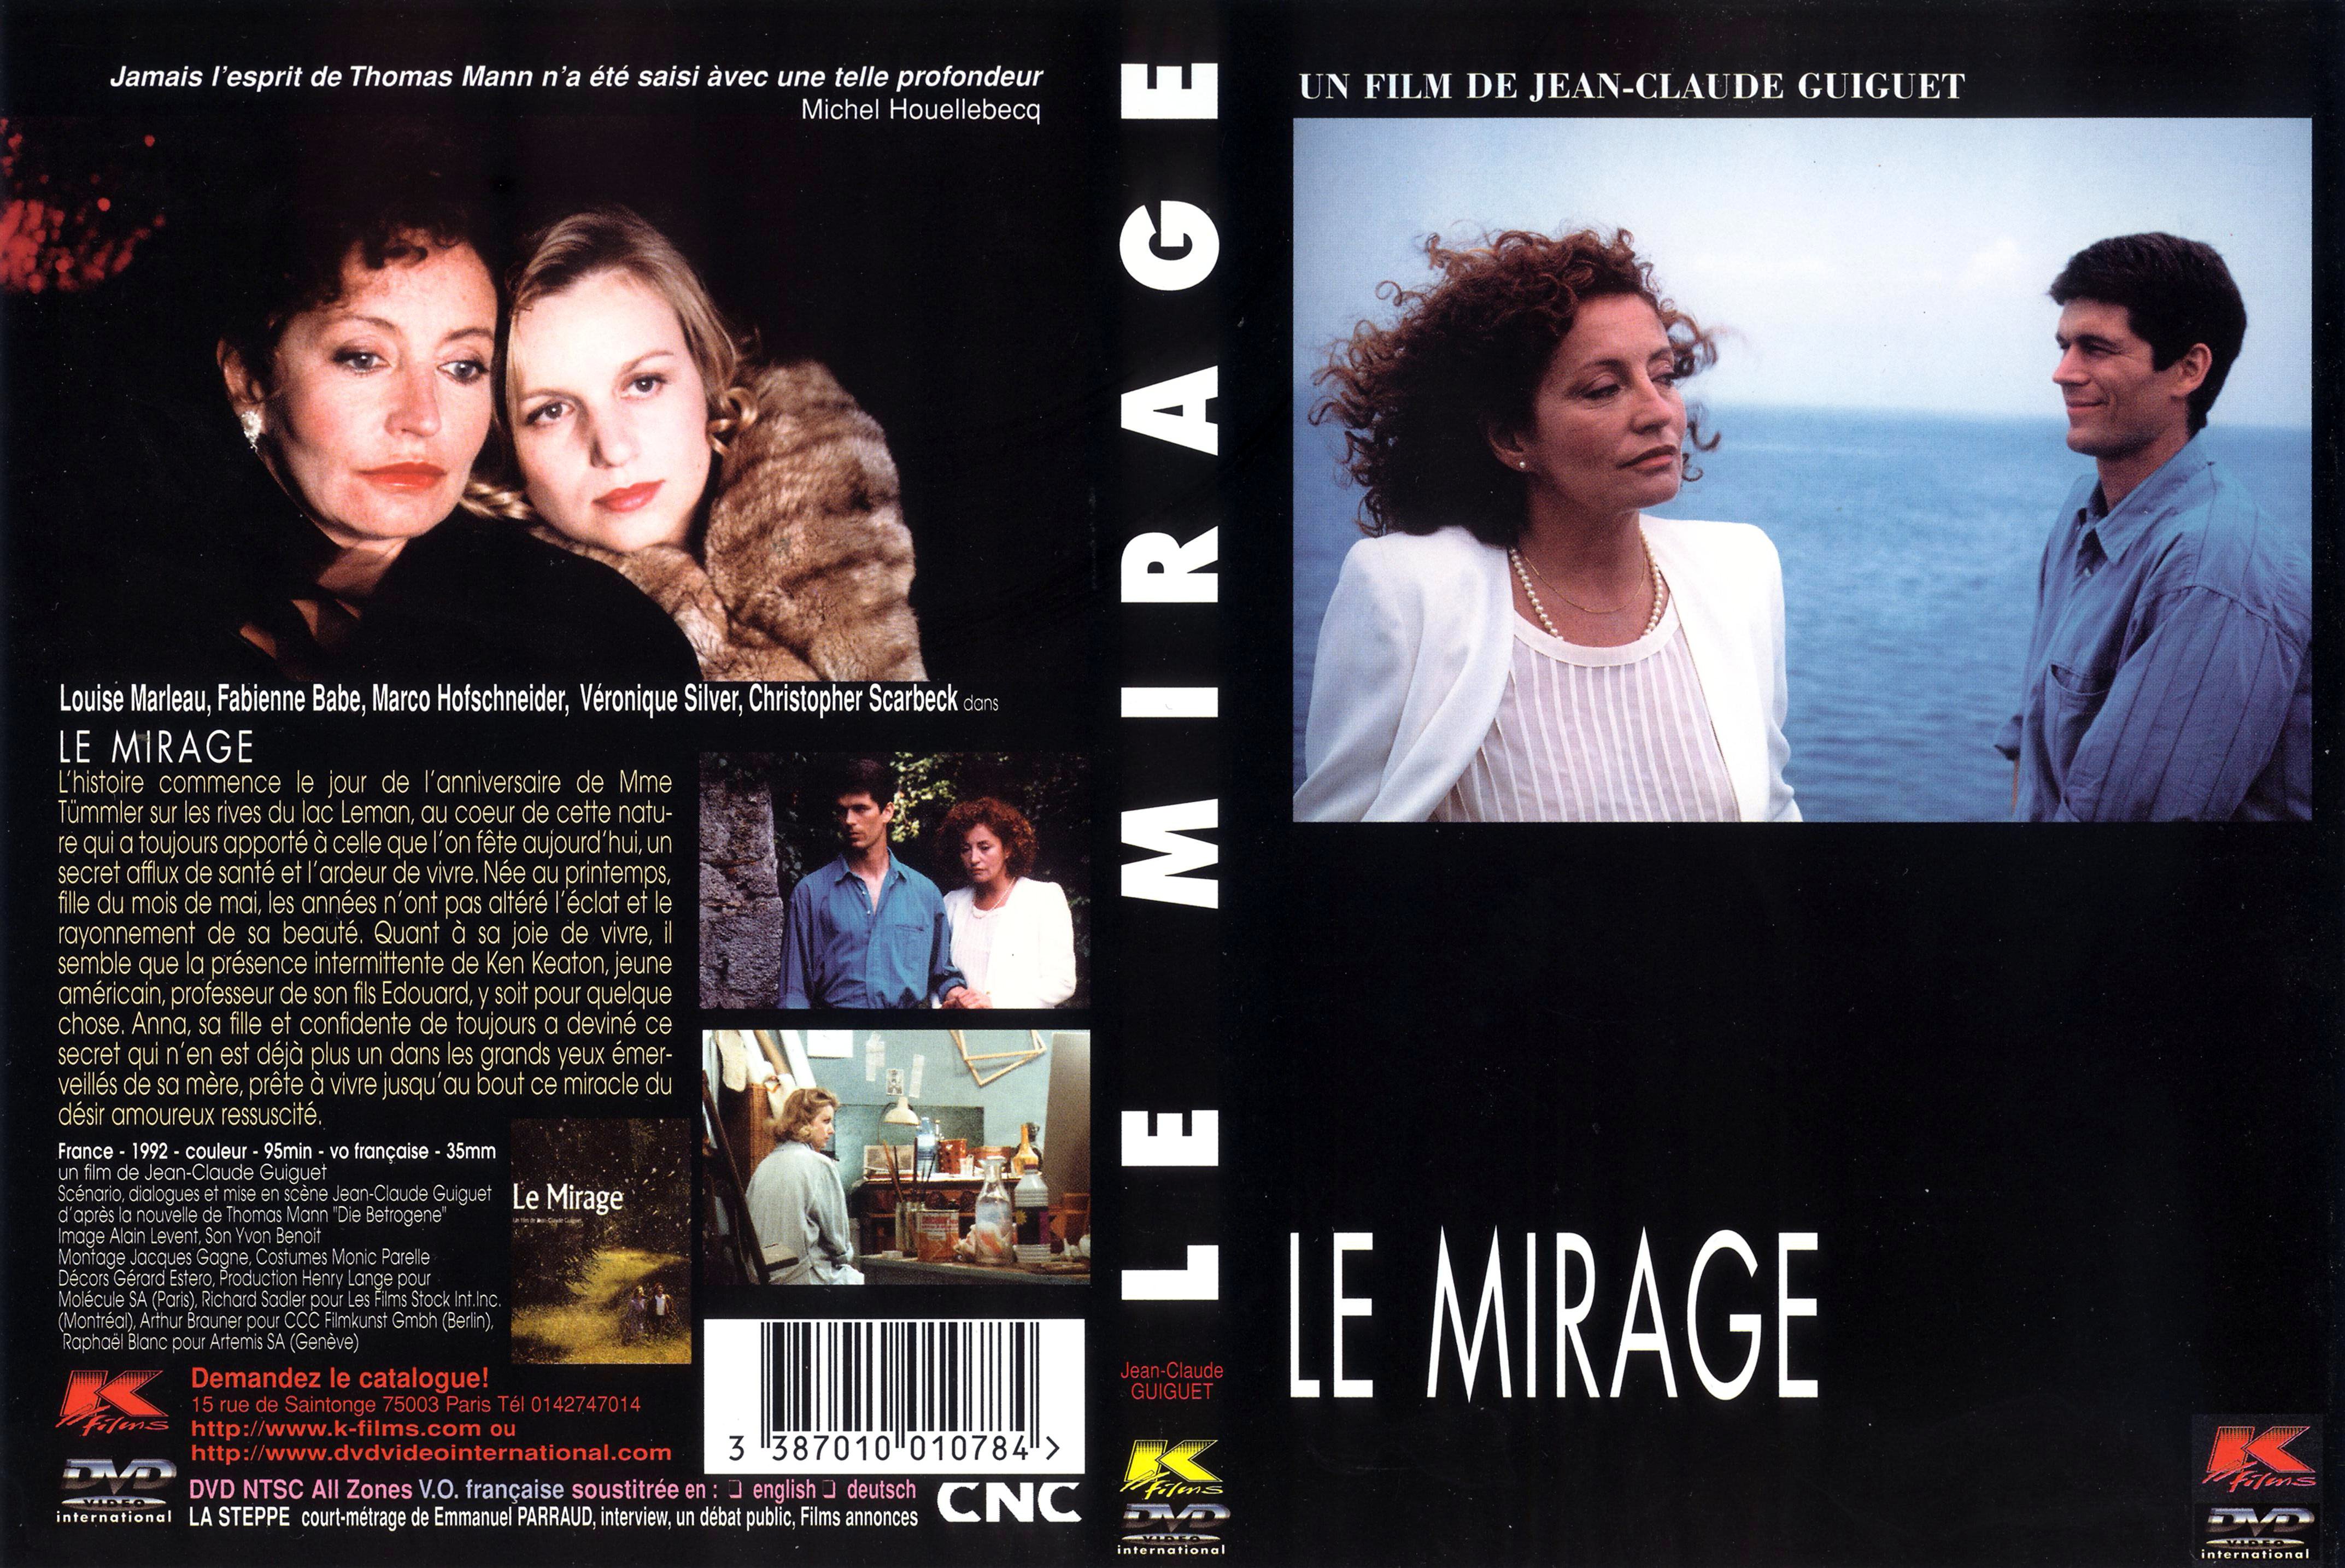 Jaquette DVD Le mirage